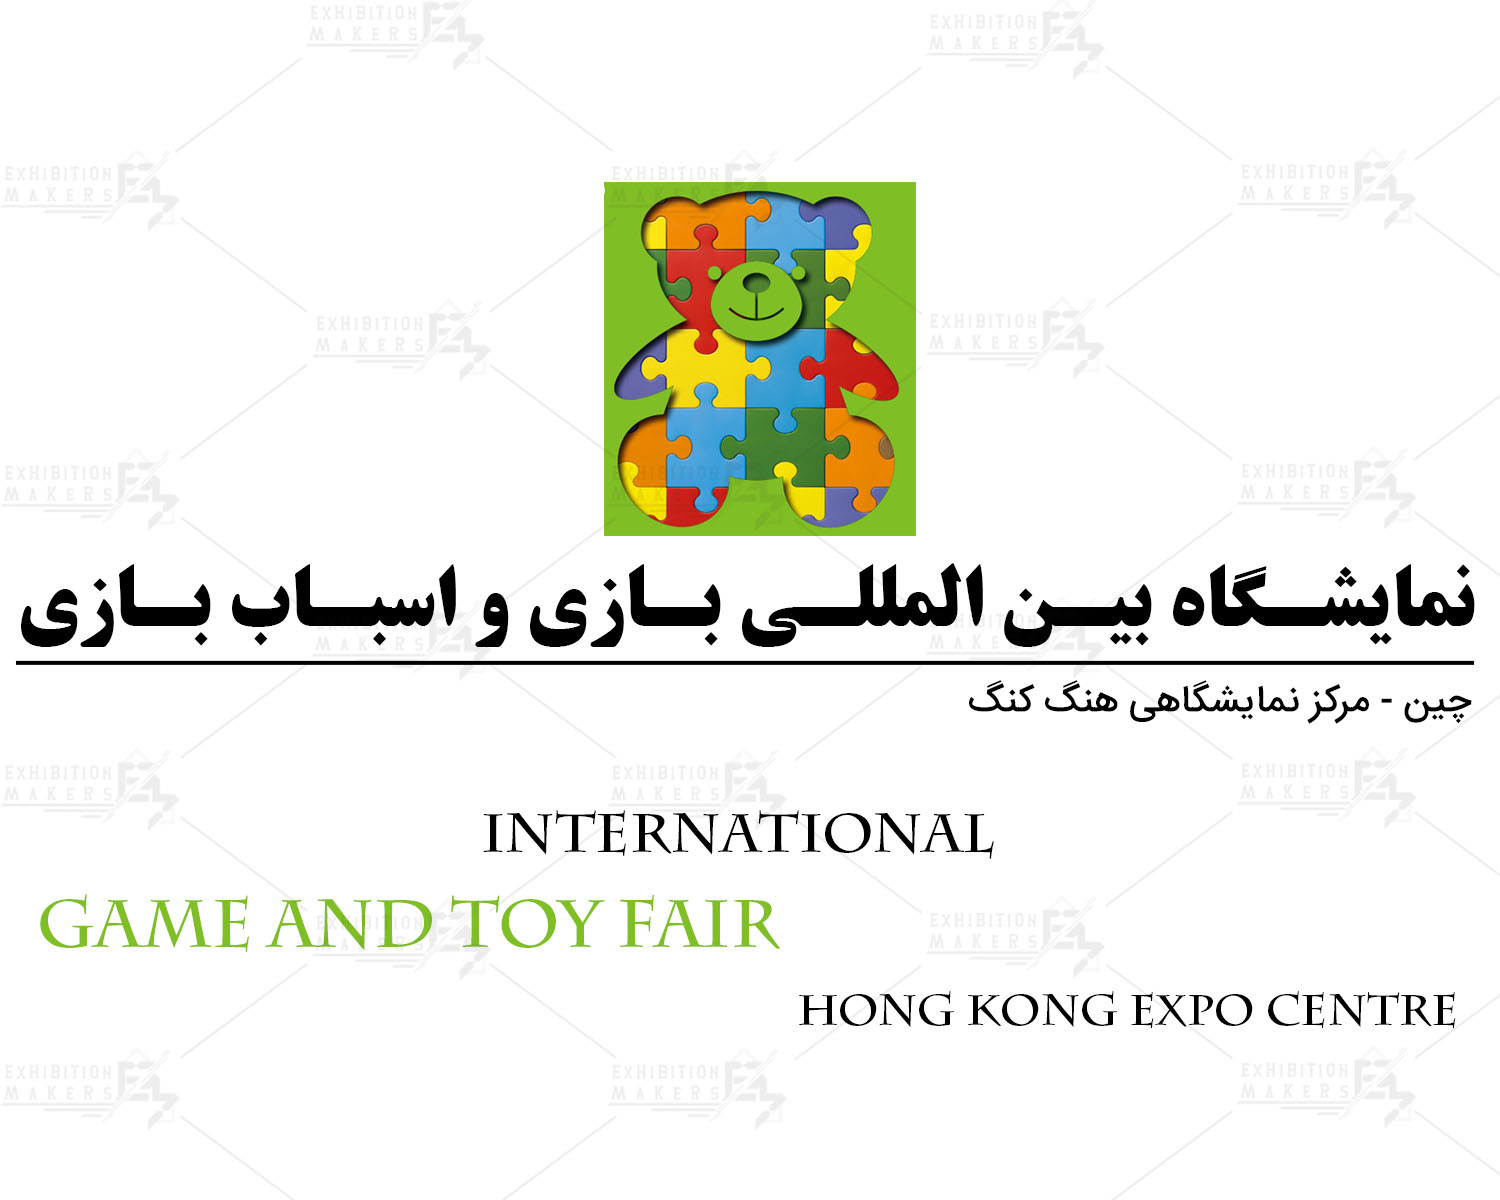 نمایشگاه بازی و اسباب بازی چین هنگ کنگ